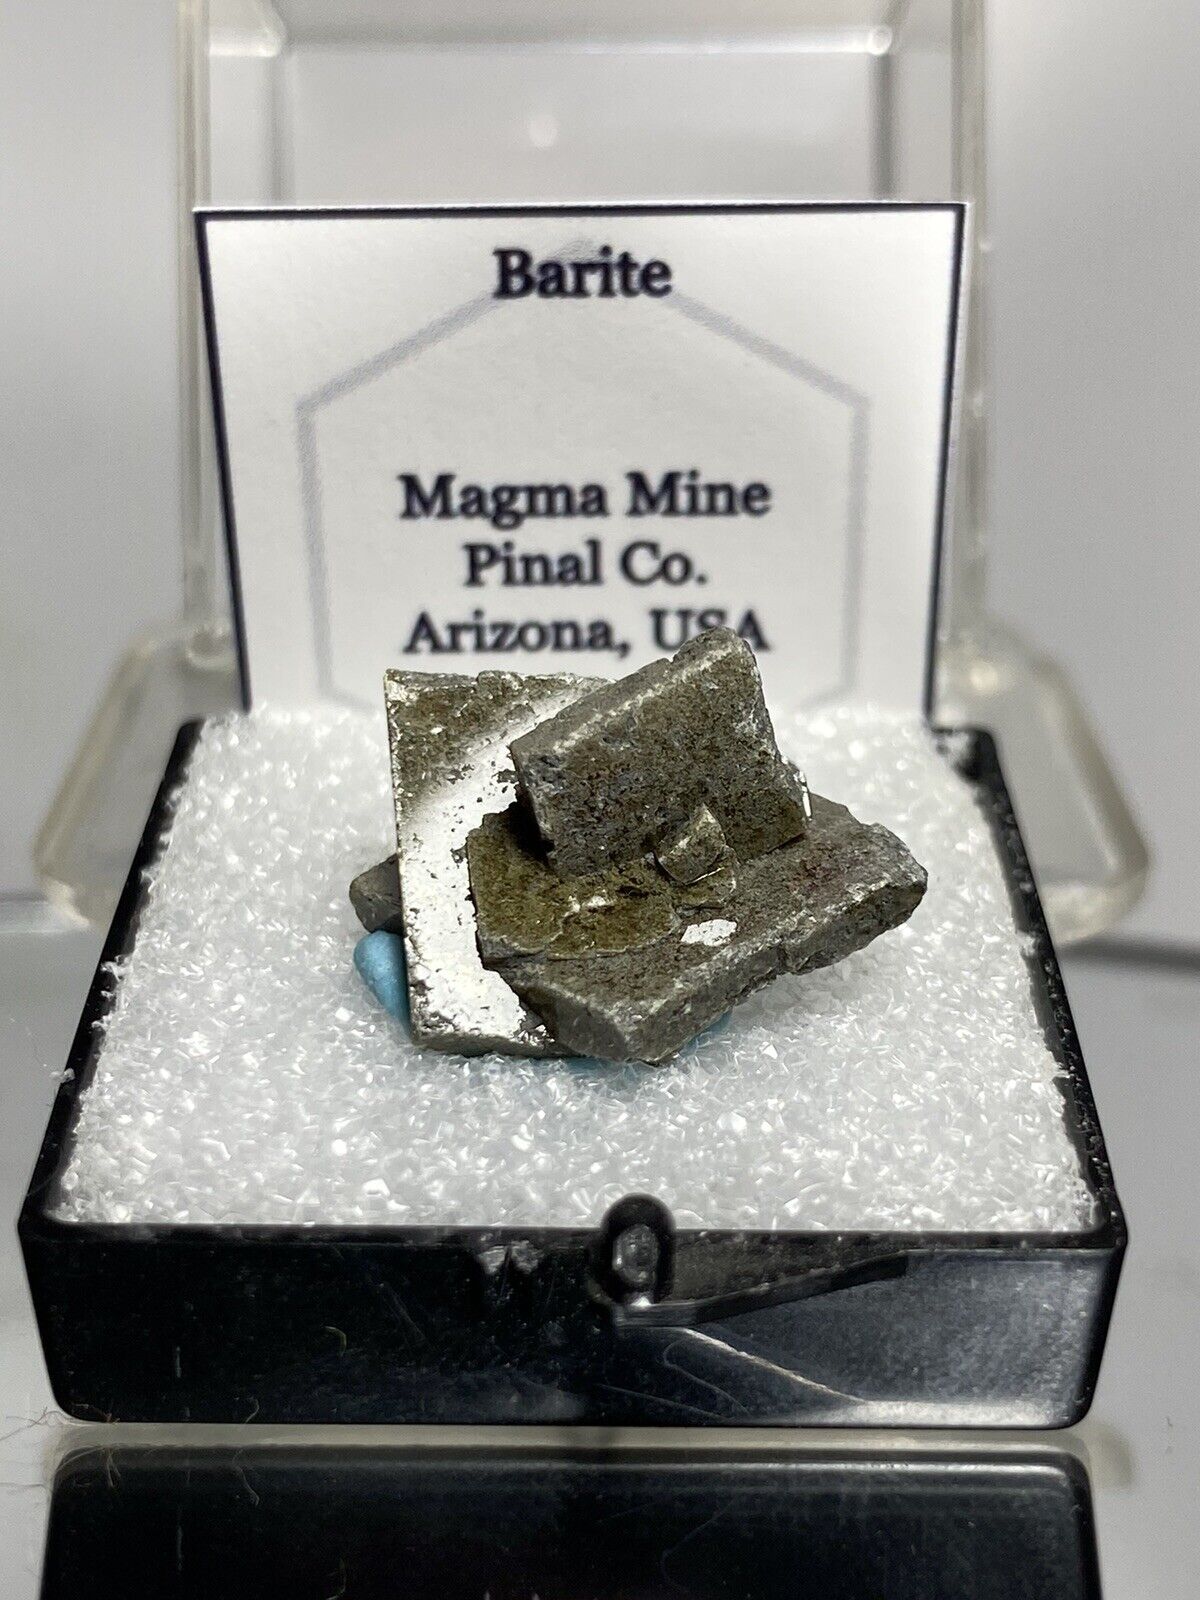 Barite Thumbnail Mineral - Magma Mine, Arizona, USA